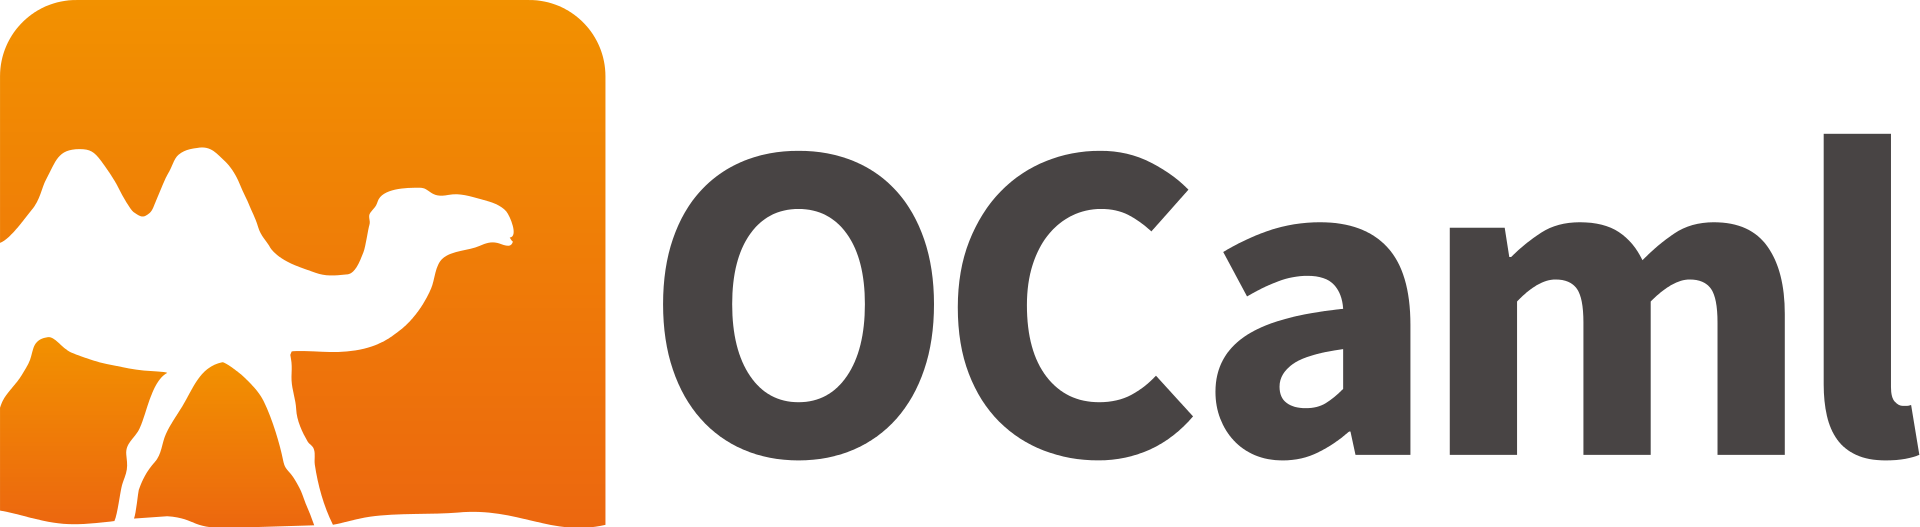 Logo OCaml